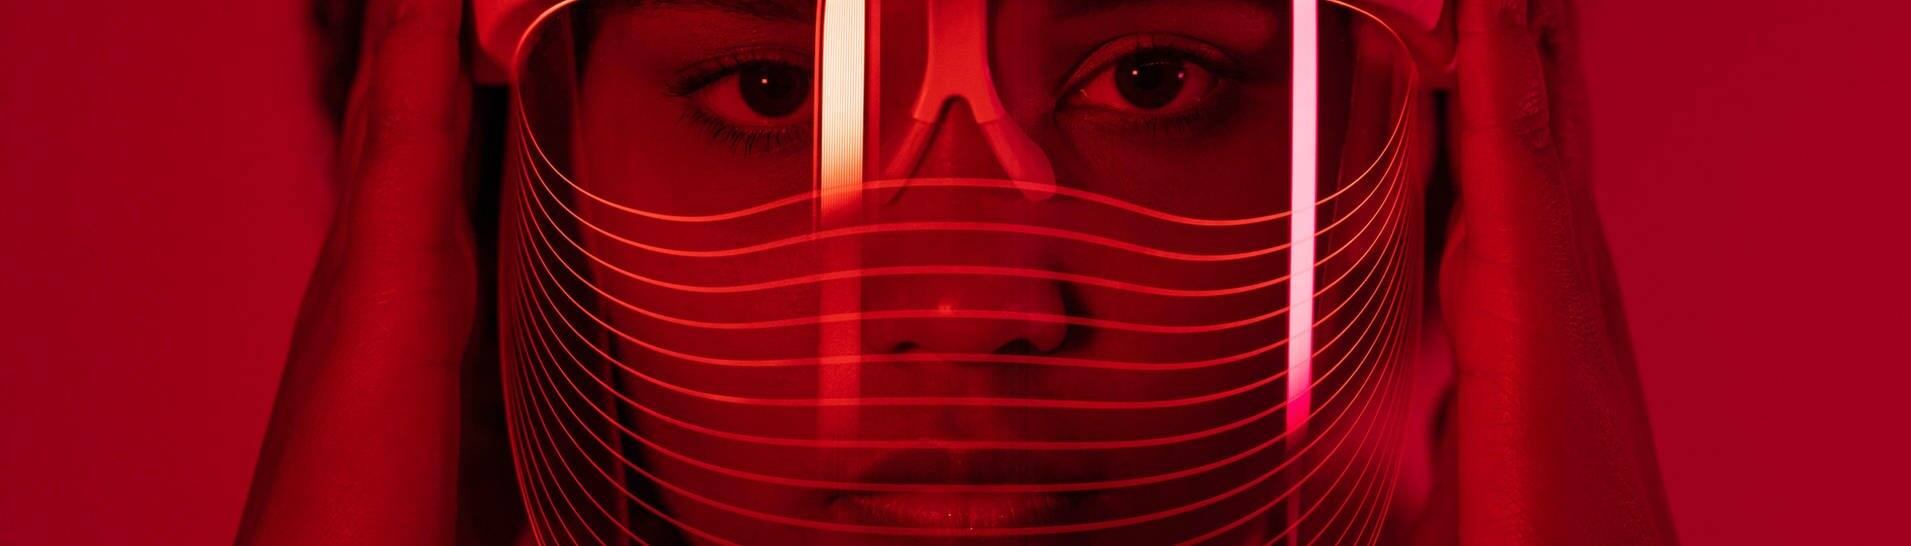 Eine LED-Maske, die durch rotes Licht kosmetische oder medizinische Effekte erzielen soll (Foto: IMAGO, Westend61)